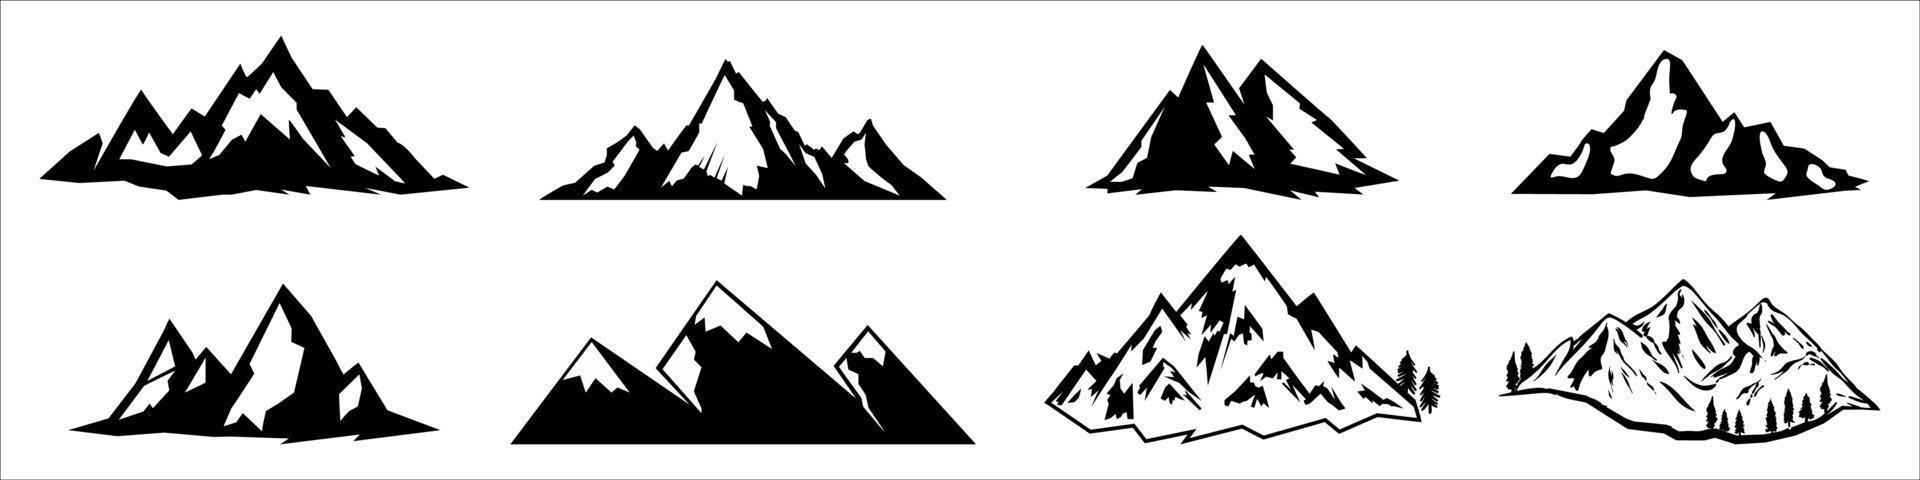 ícones de montanhas vetoriais isolados no branco vetor